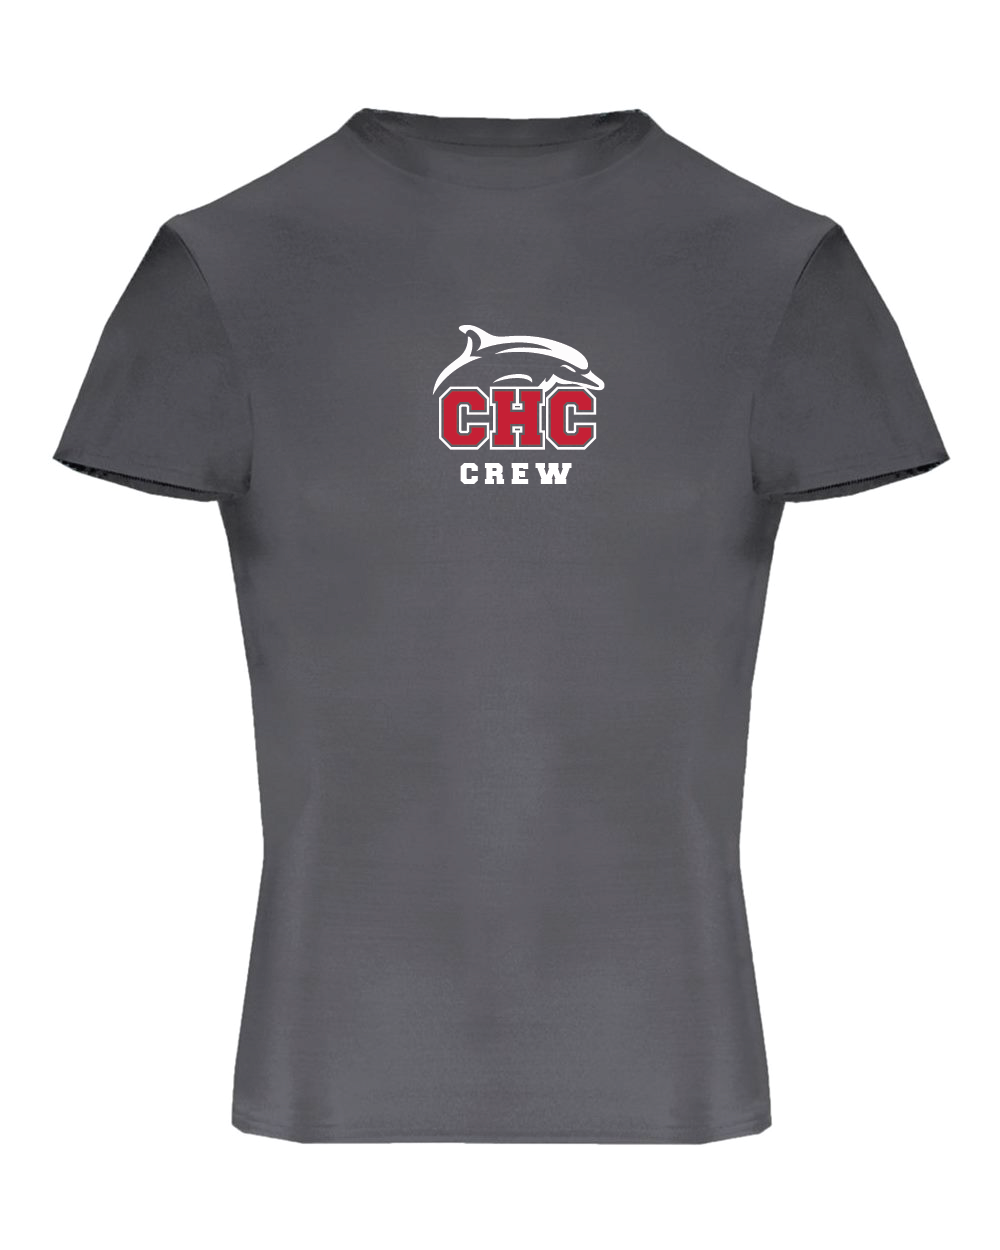 Pro-Compression T-Shirt / Graphite / Cape Henry Collegiate Crew